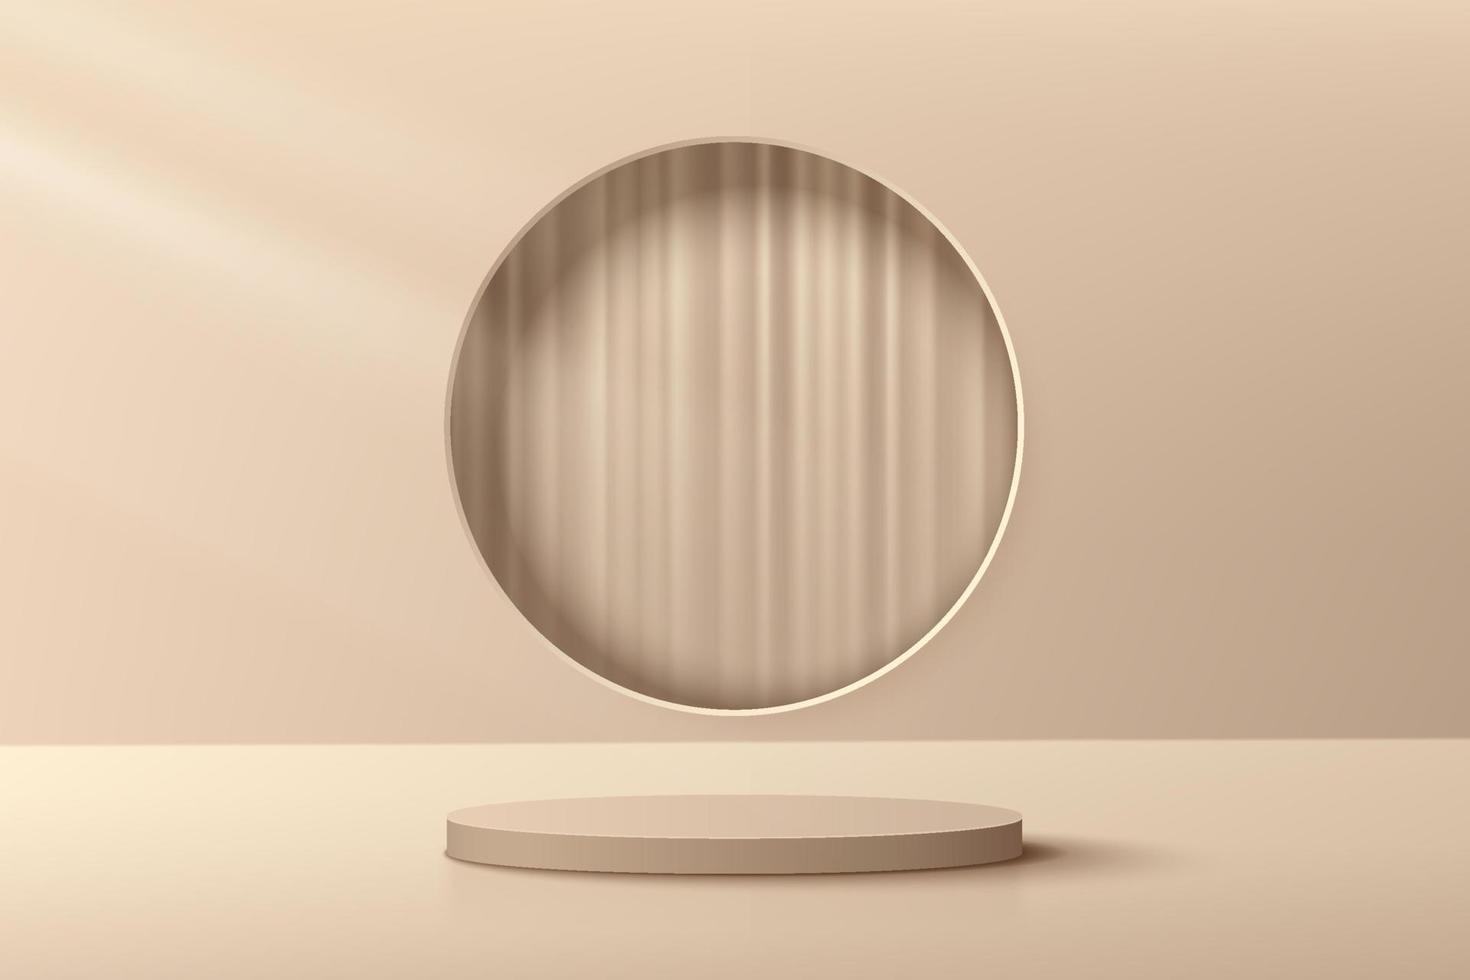 podium de piédestal de cylindre 3d beige abstrait avec fenêtre circulaire et rideau à l'intérieur. scène de mur minimal marron de luxe pour la présentation d'affichage de produits cosmétiques. conception de plate-forme de rendu géométrique vectoriel. vecteur